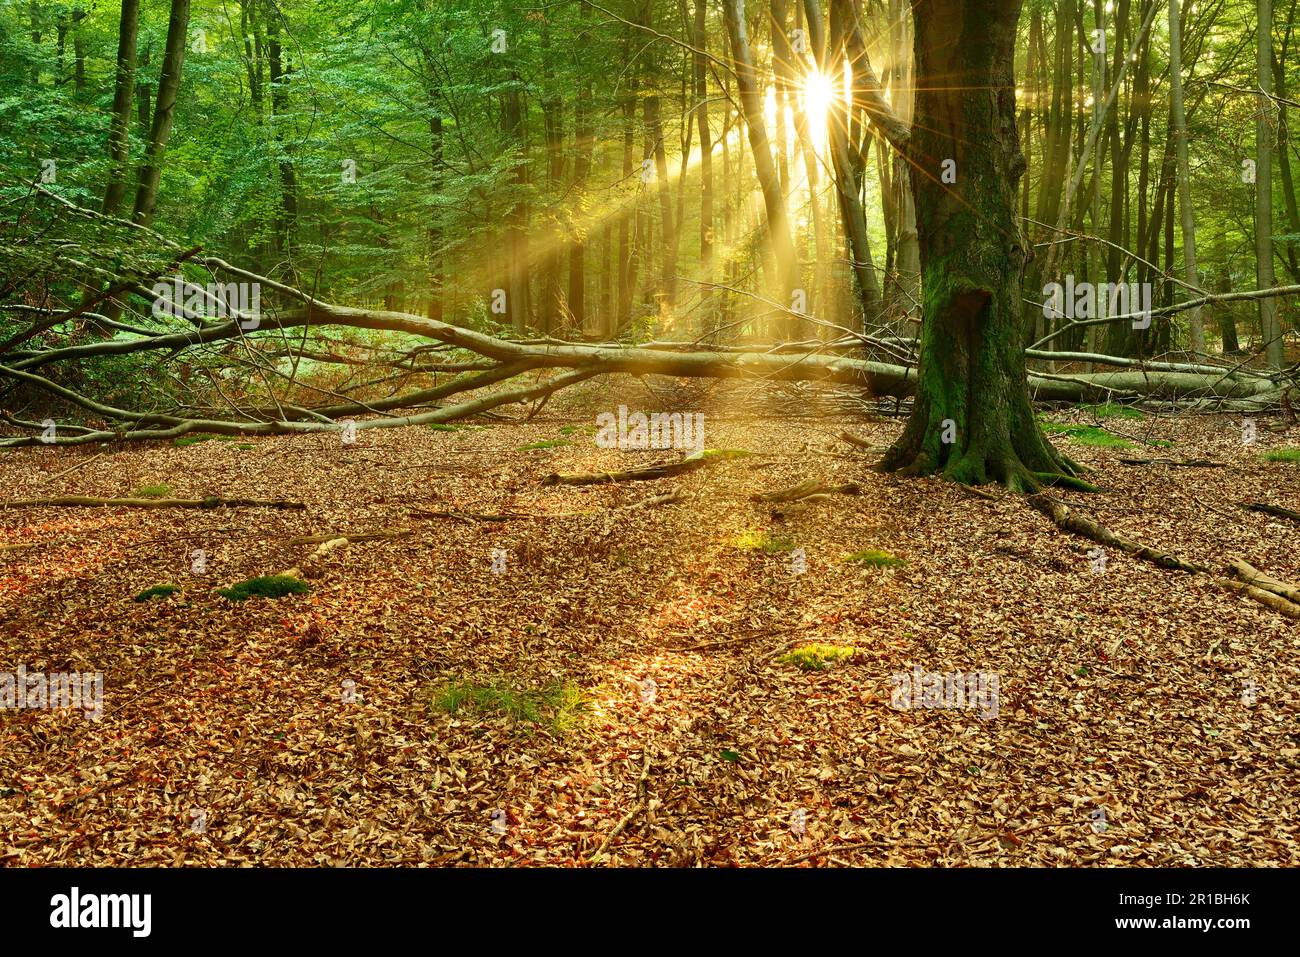 La foresta di faggi incontaminata, inondata di luce, con un sacco di legno morto al mattino presto, il sole splende attraverso la nebbia, Reinhardswald, Assia, Germania Foto Stock